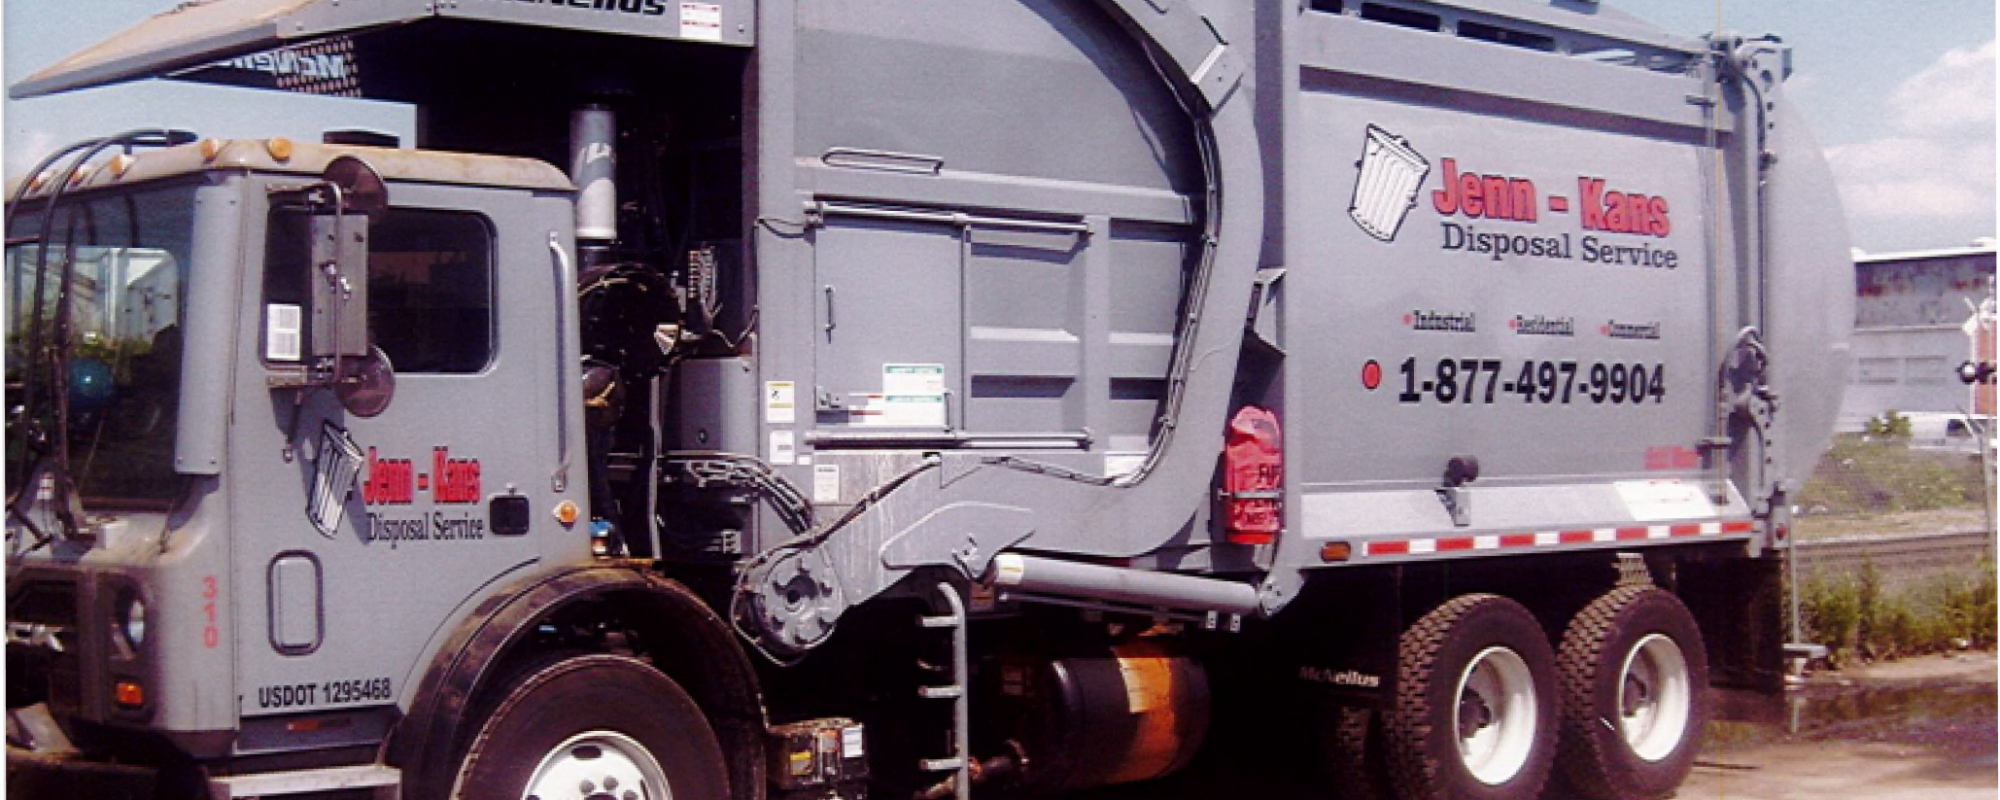 Disposal Service Truck